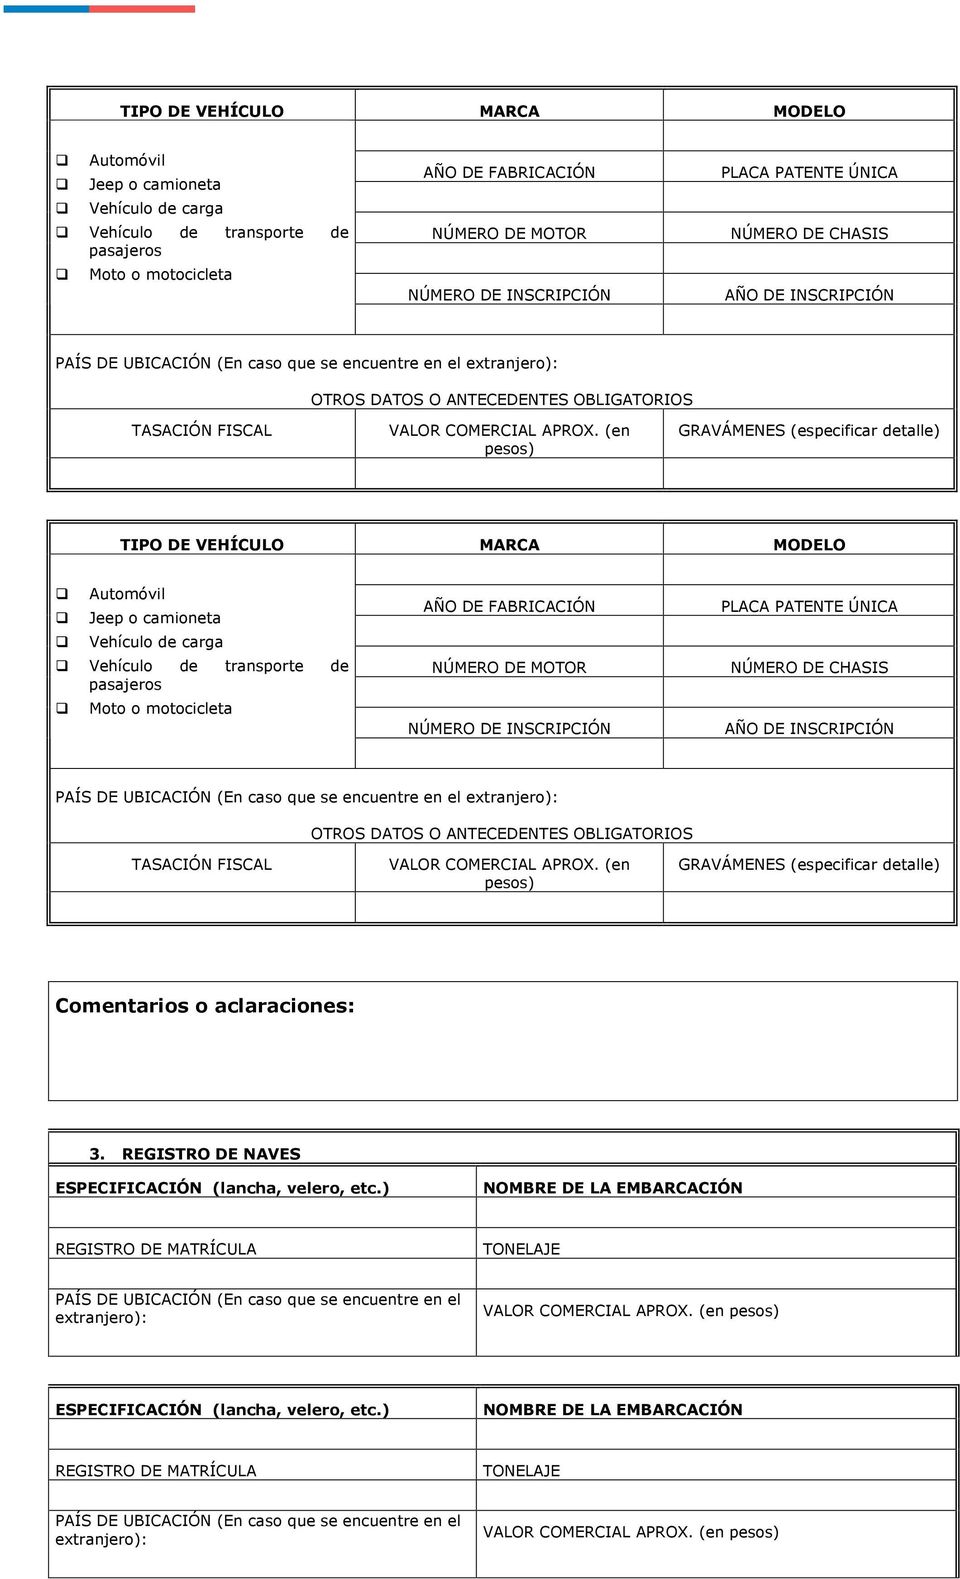 PAÍS DE UBICACIÓN (En caso que se encuentre en el extranjero): GRAVÁMENES (especificar detalle) 3. REGISTRO DE NAVES ESPECIFICACIÓN (lancha, velero, etc.